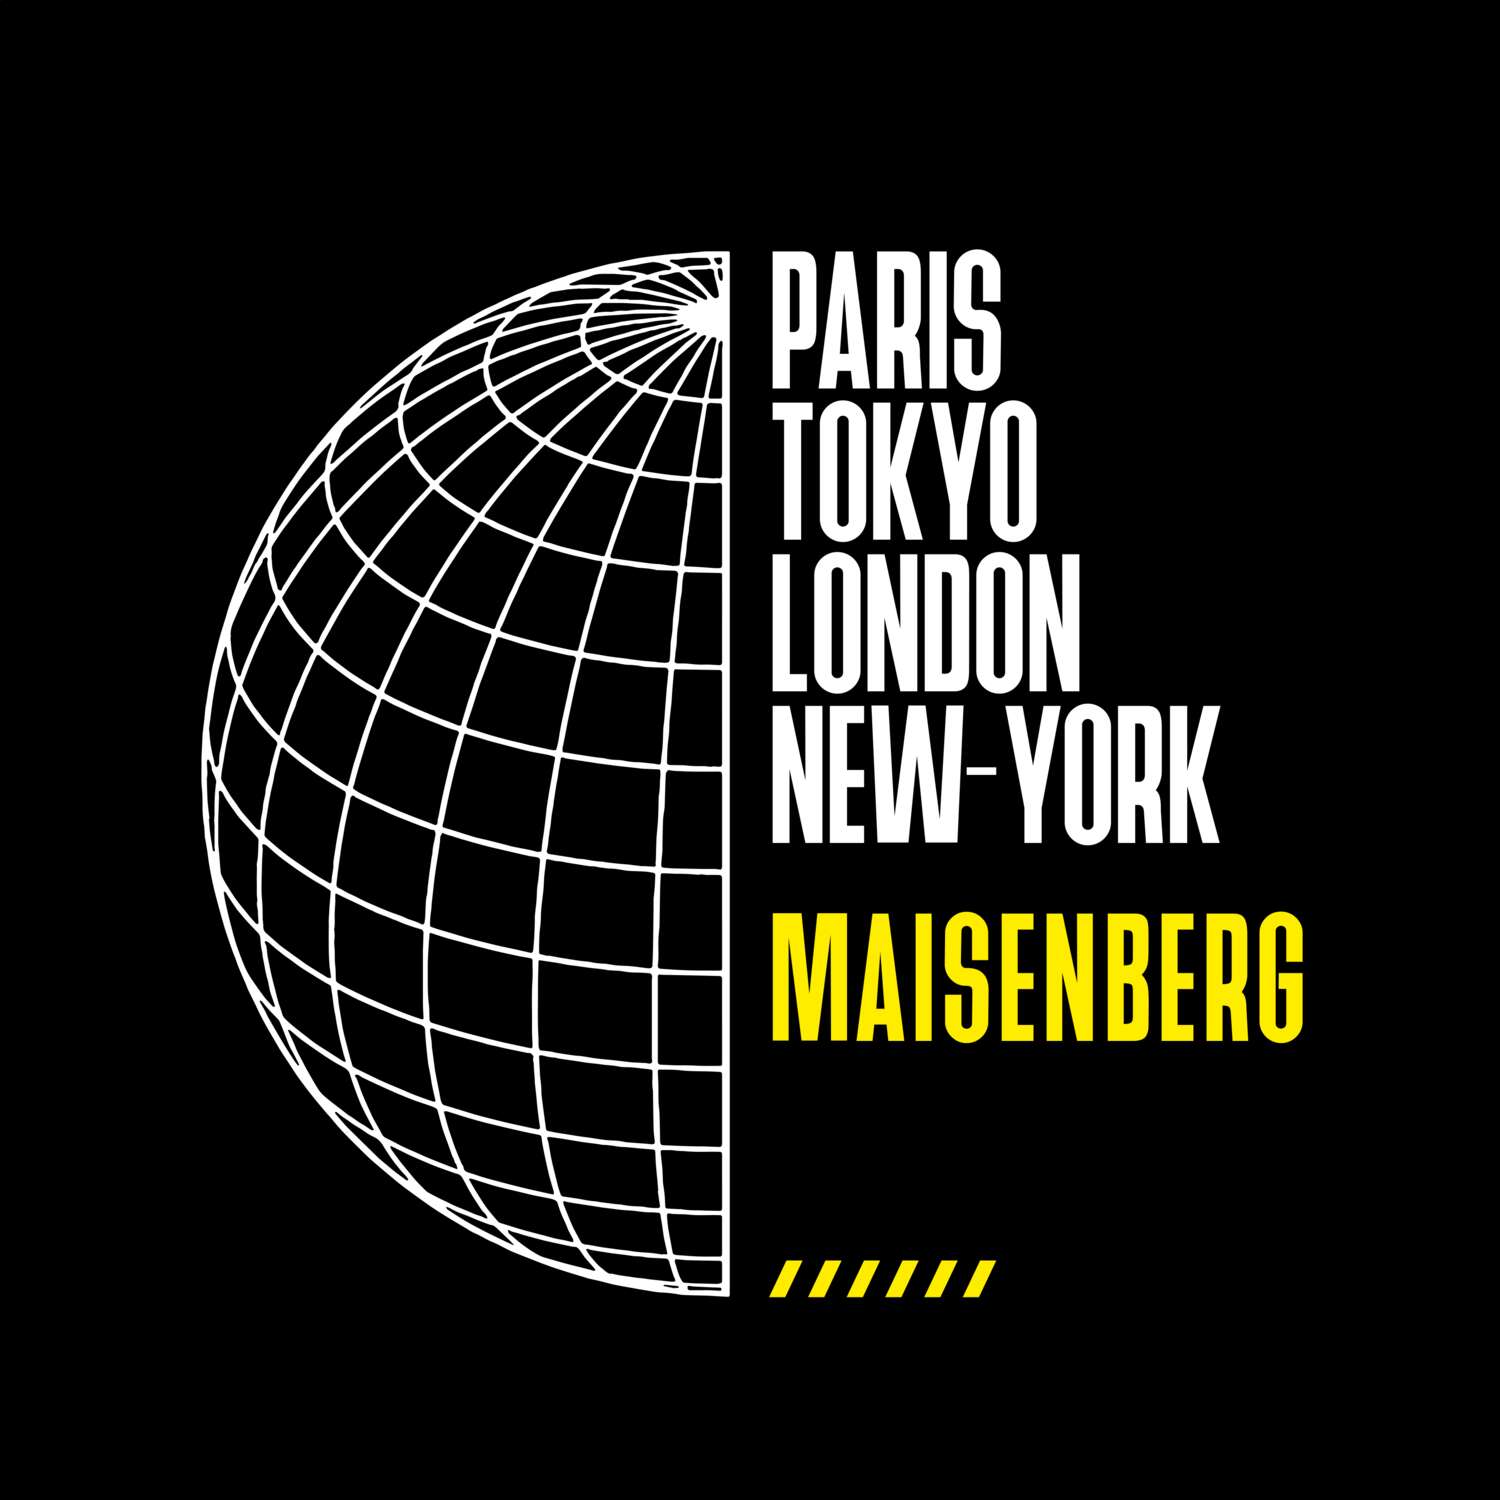 Maisenberg T-Shirt »Paris Tokyo London«